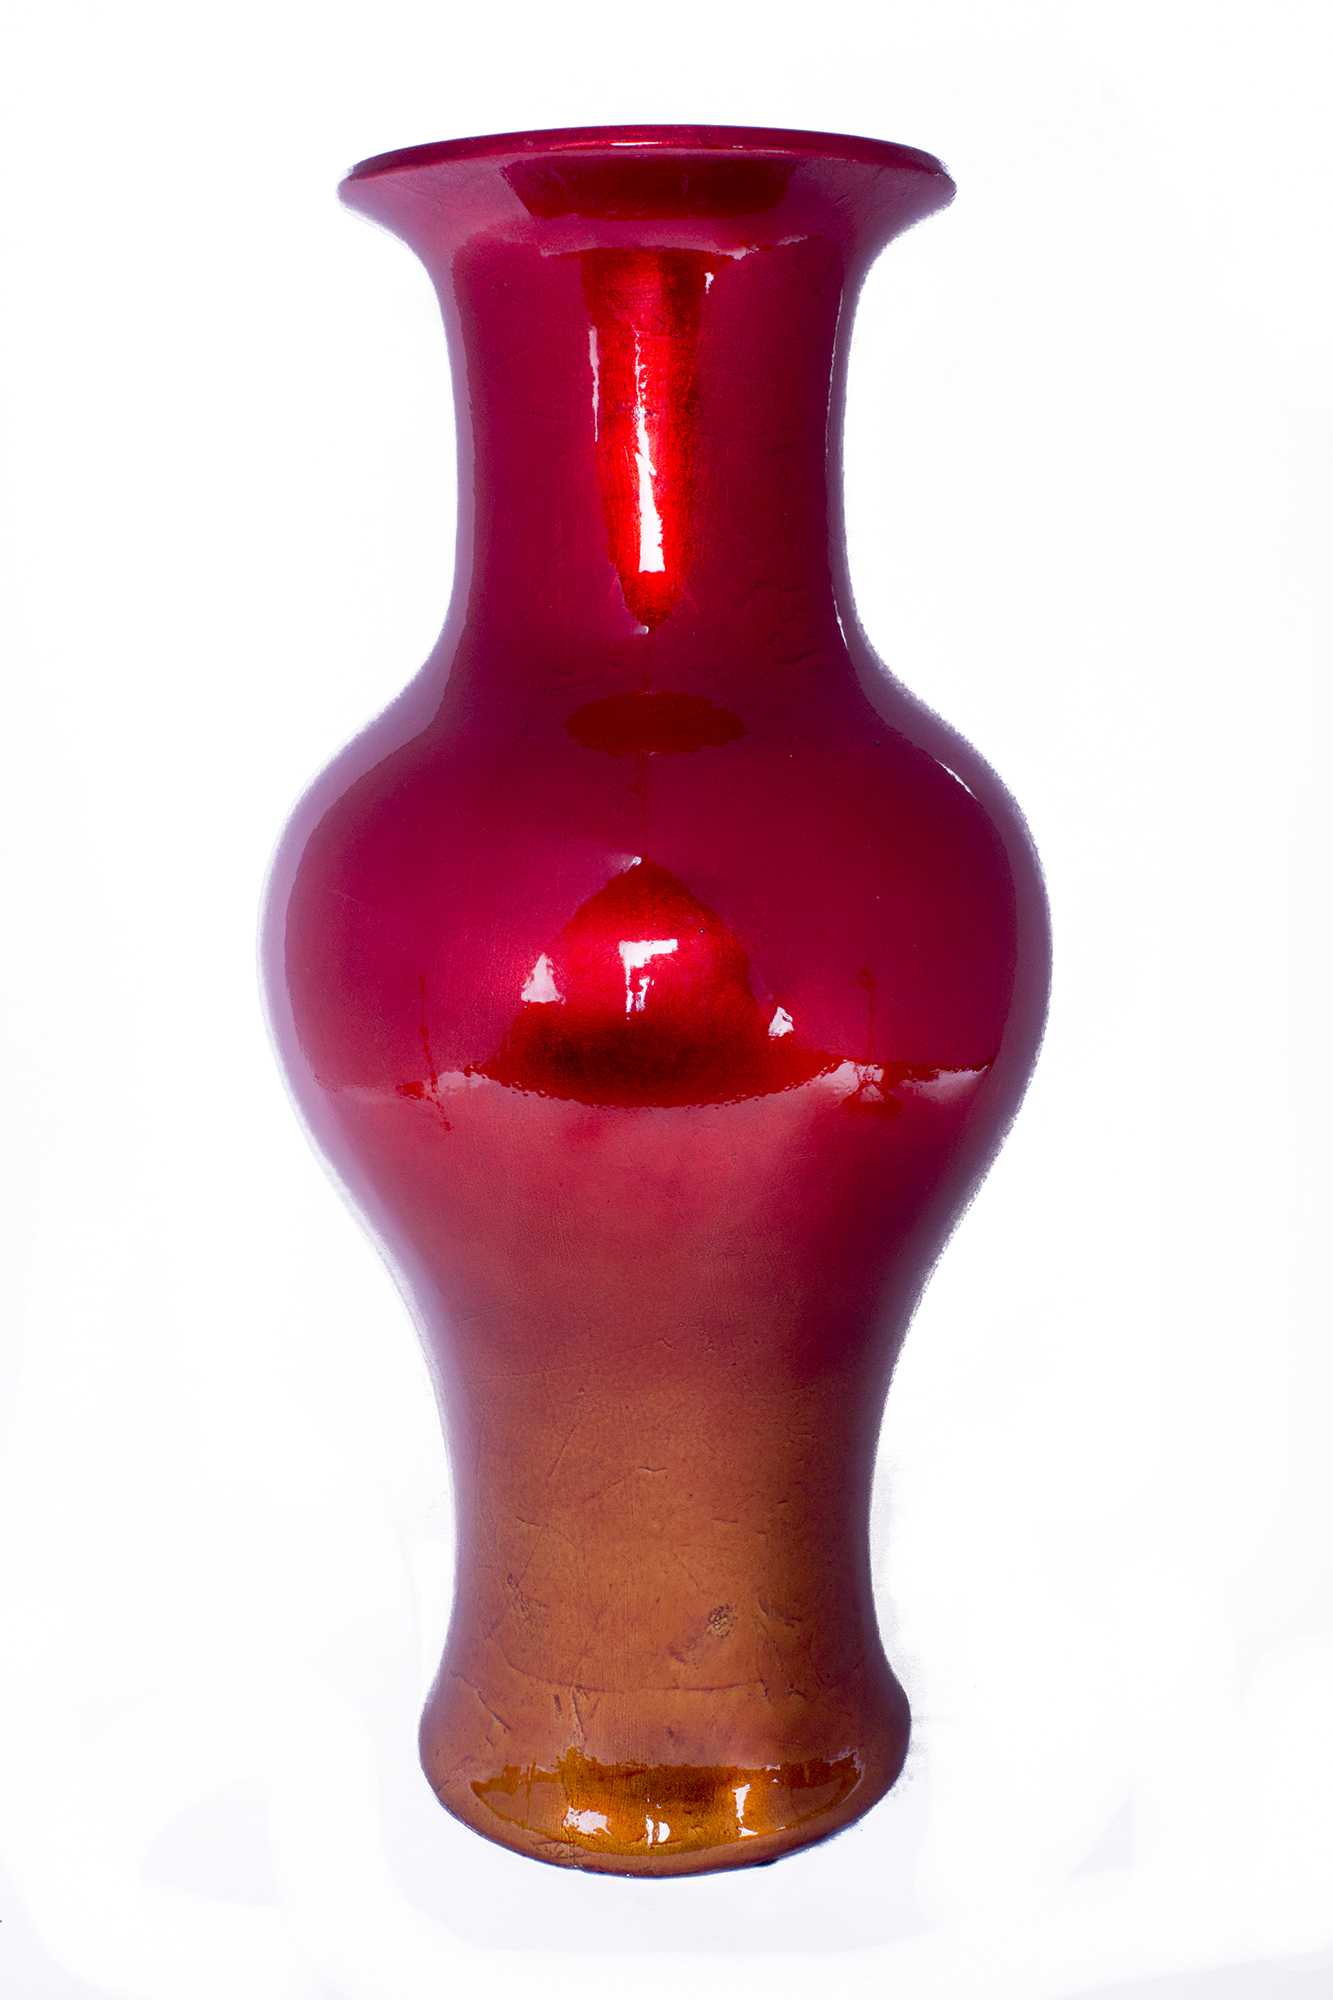 13" X 13" X 18" Red And Orange Ceramic Lacquered Ceramic Vase